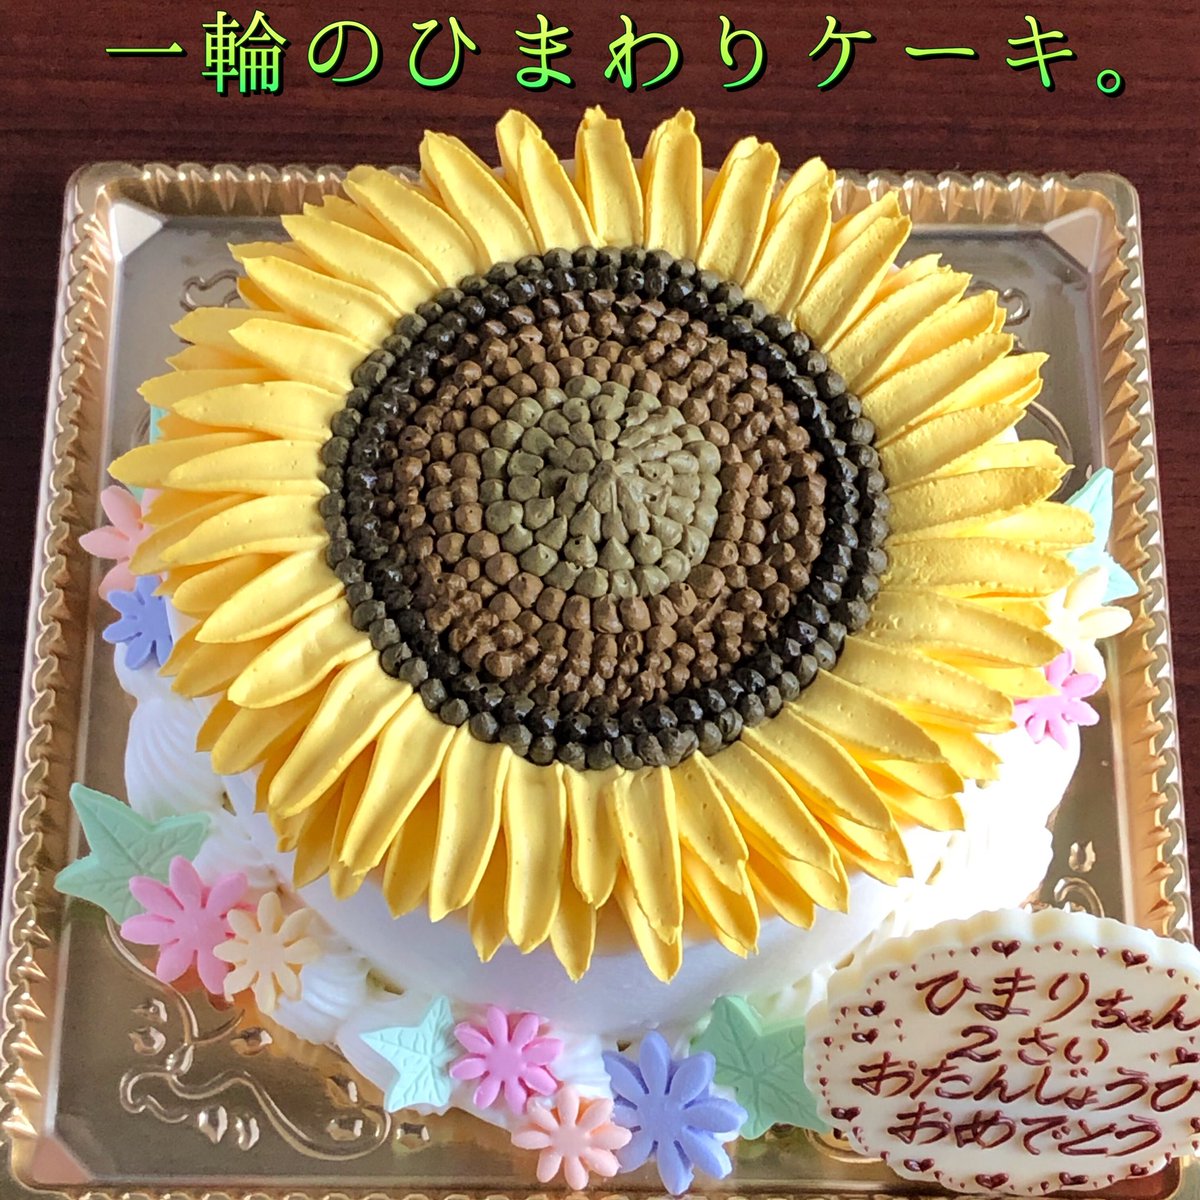 L Aura ローラ アレルギー対応とオーダーケーキの店 A Twitter またまた黄色いお花のケーキです ケーキ全体が 一輪のひまわり になってる ケーキ 昨日のミモザと同じく 実物のお花の写真を 何枚 何種類と並べて眺めながら すこーしずつイメージを